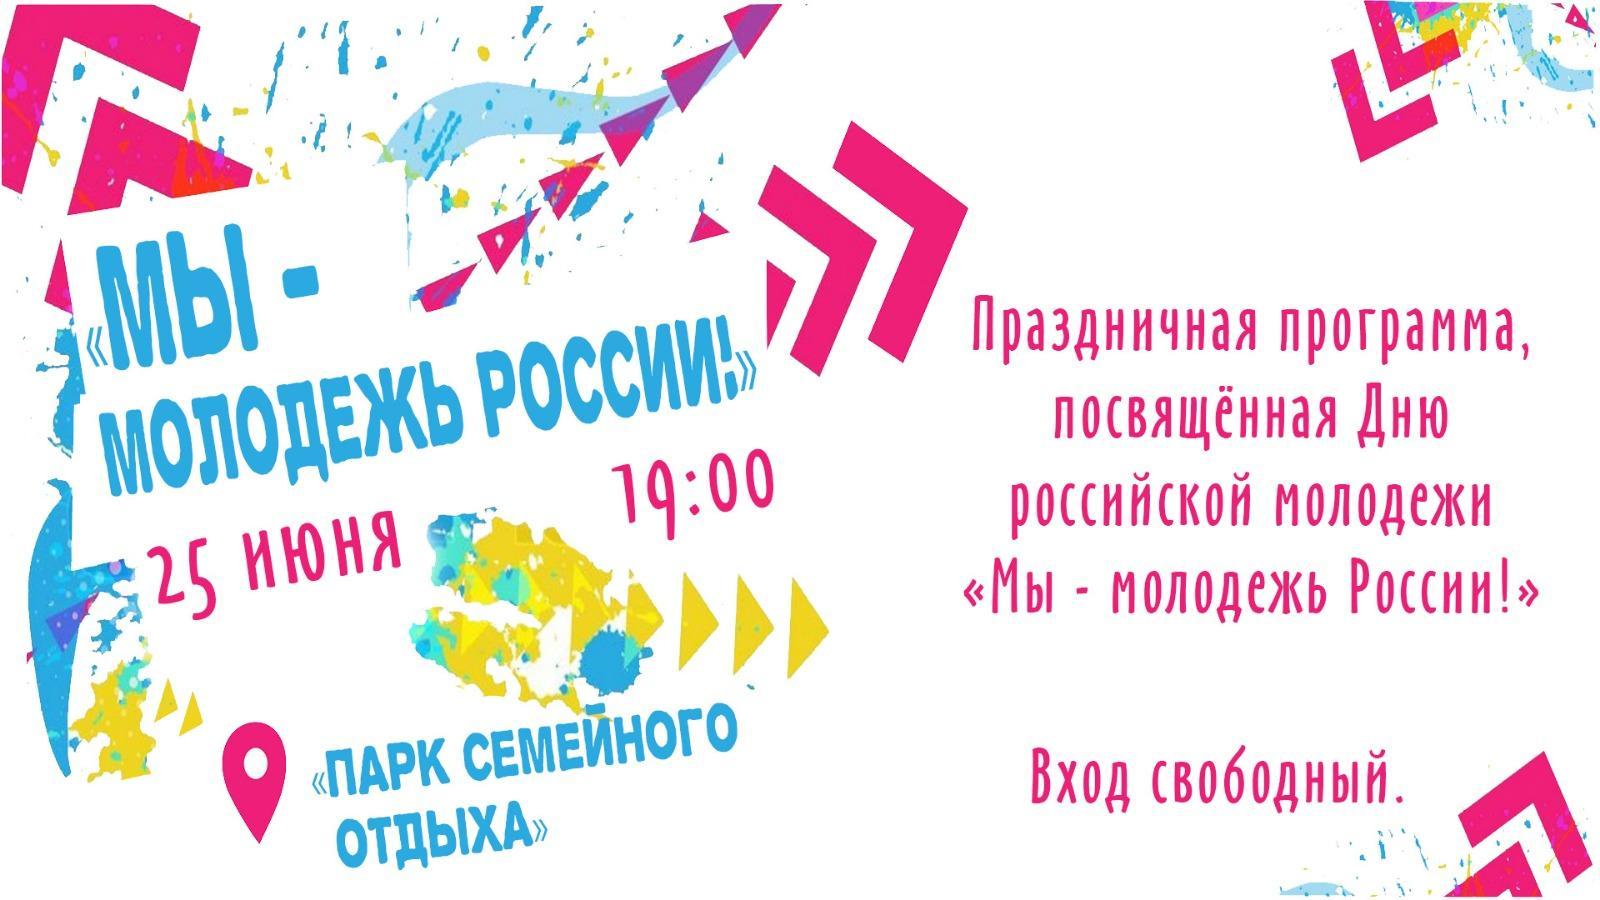 25 июня в 19:00  часов «Парк семейного отдыха».  Состоится праздничная программа, посвящённая Дню российской молодежи «Мы молодежь России!»